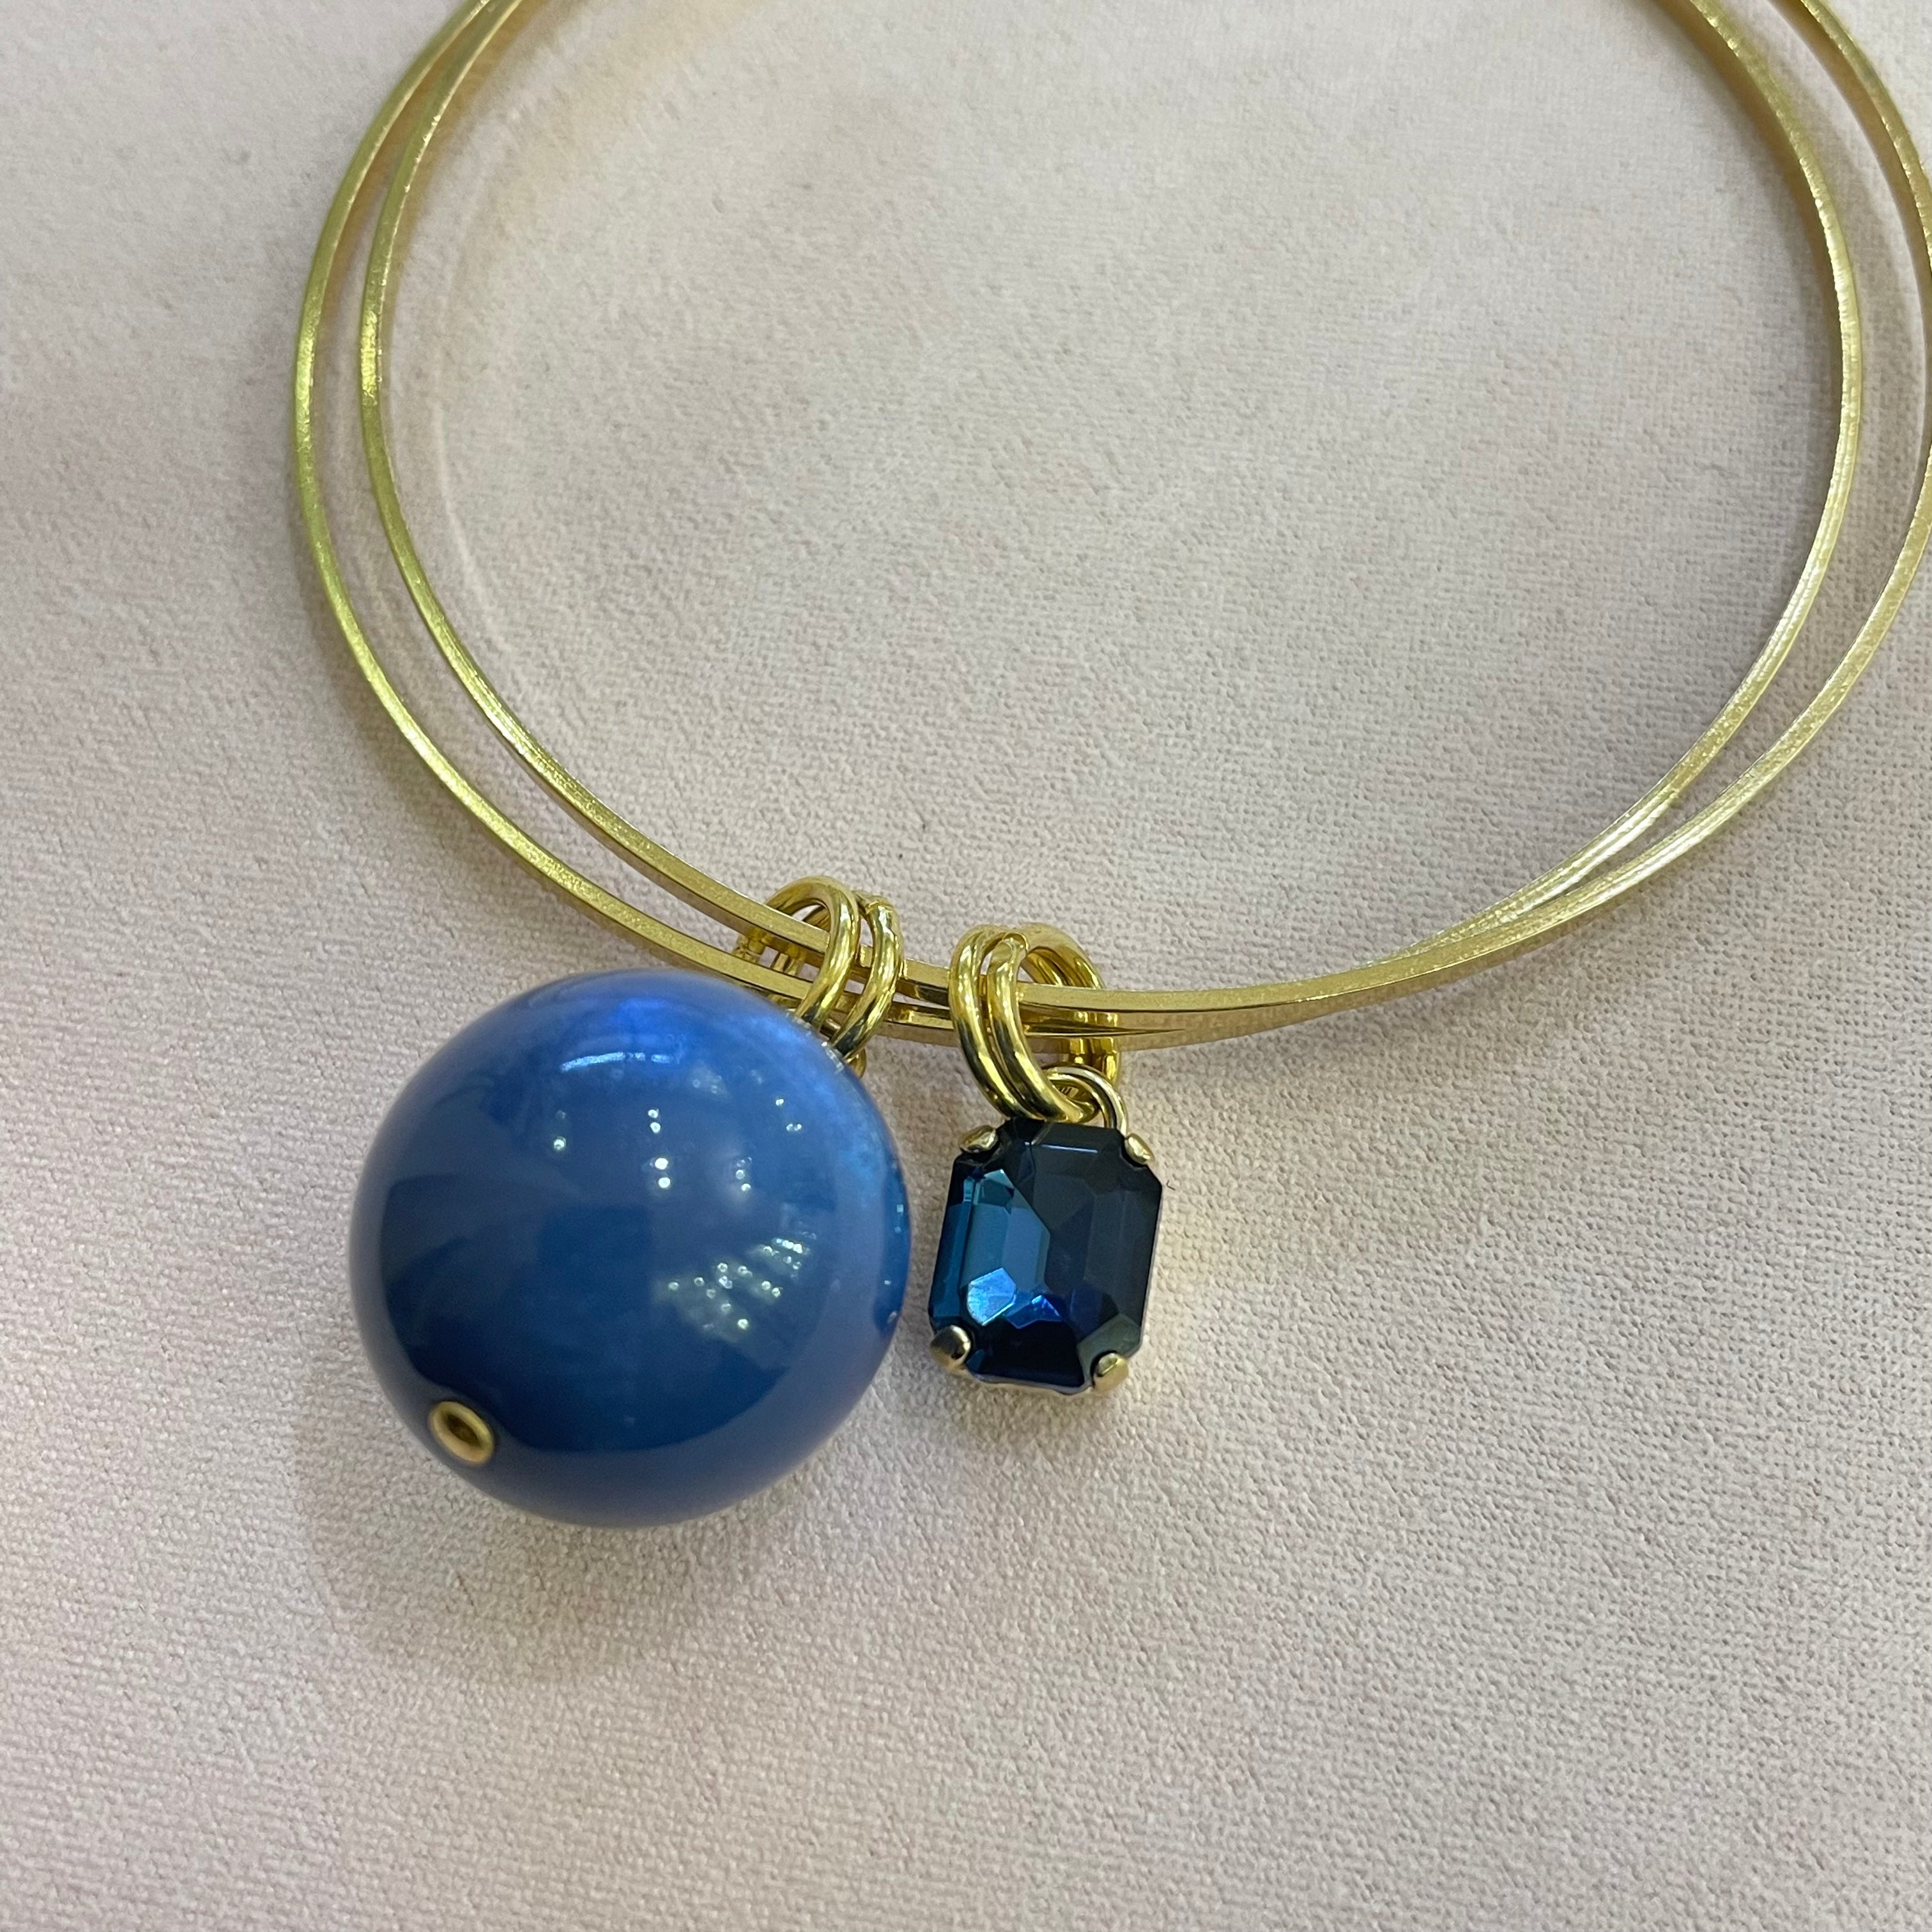 Navy blue Swarovski crystal elegant bangle